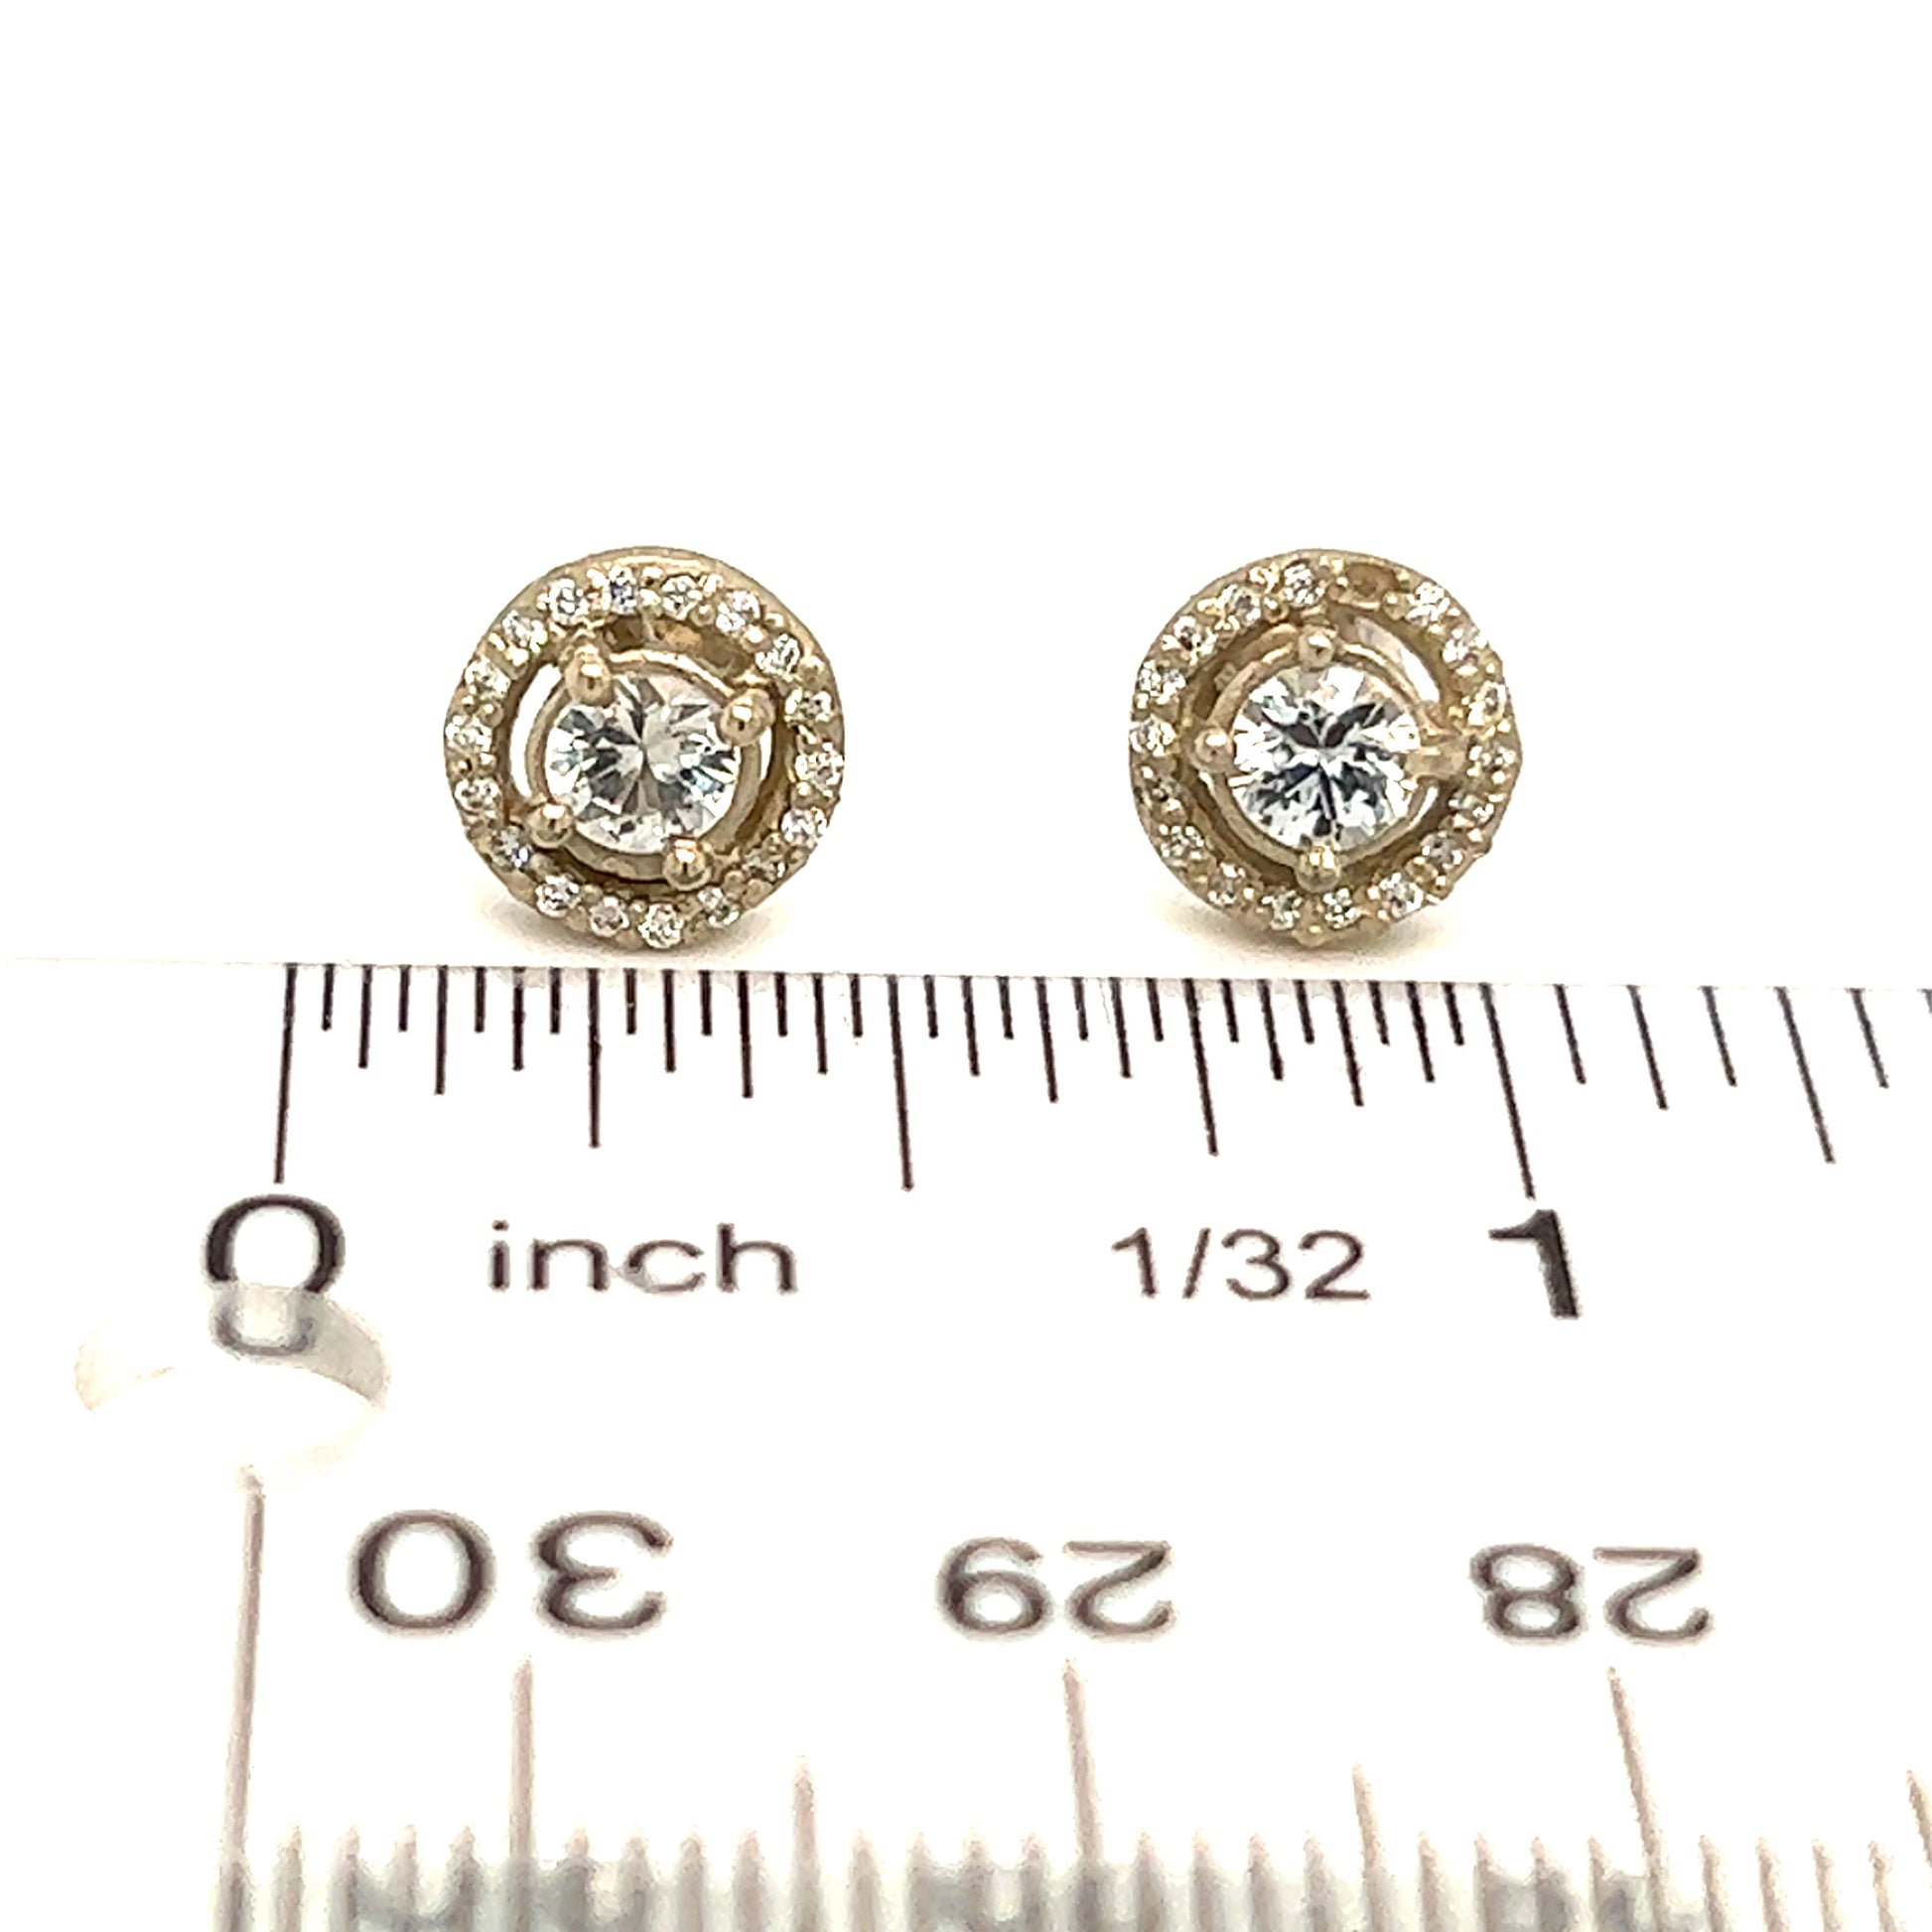 Natural Sapphire Diamond Stud Earrings 14k W Gold 0.83 TCW Certified $2,950 215614 - Certified Fine Jewelry